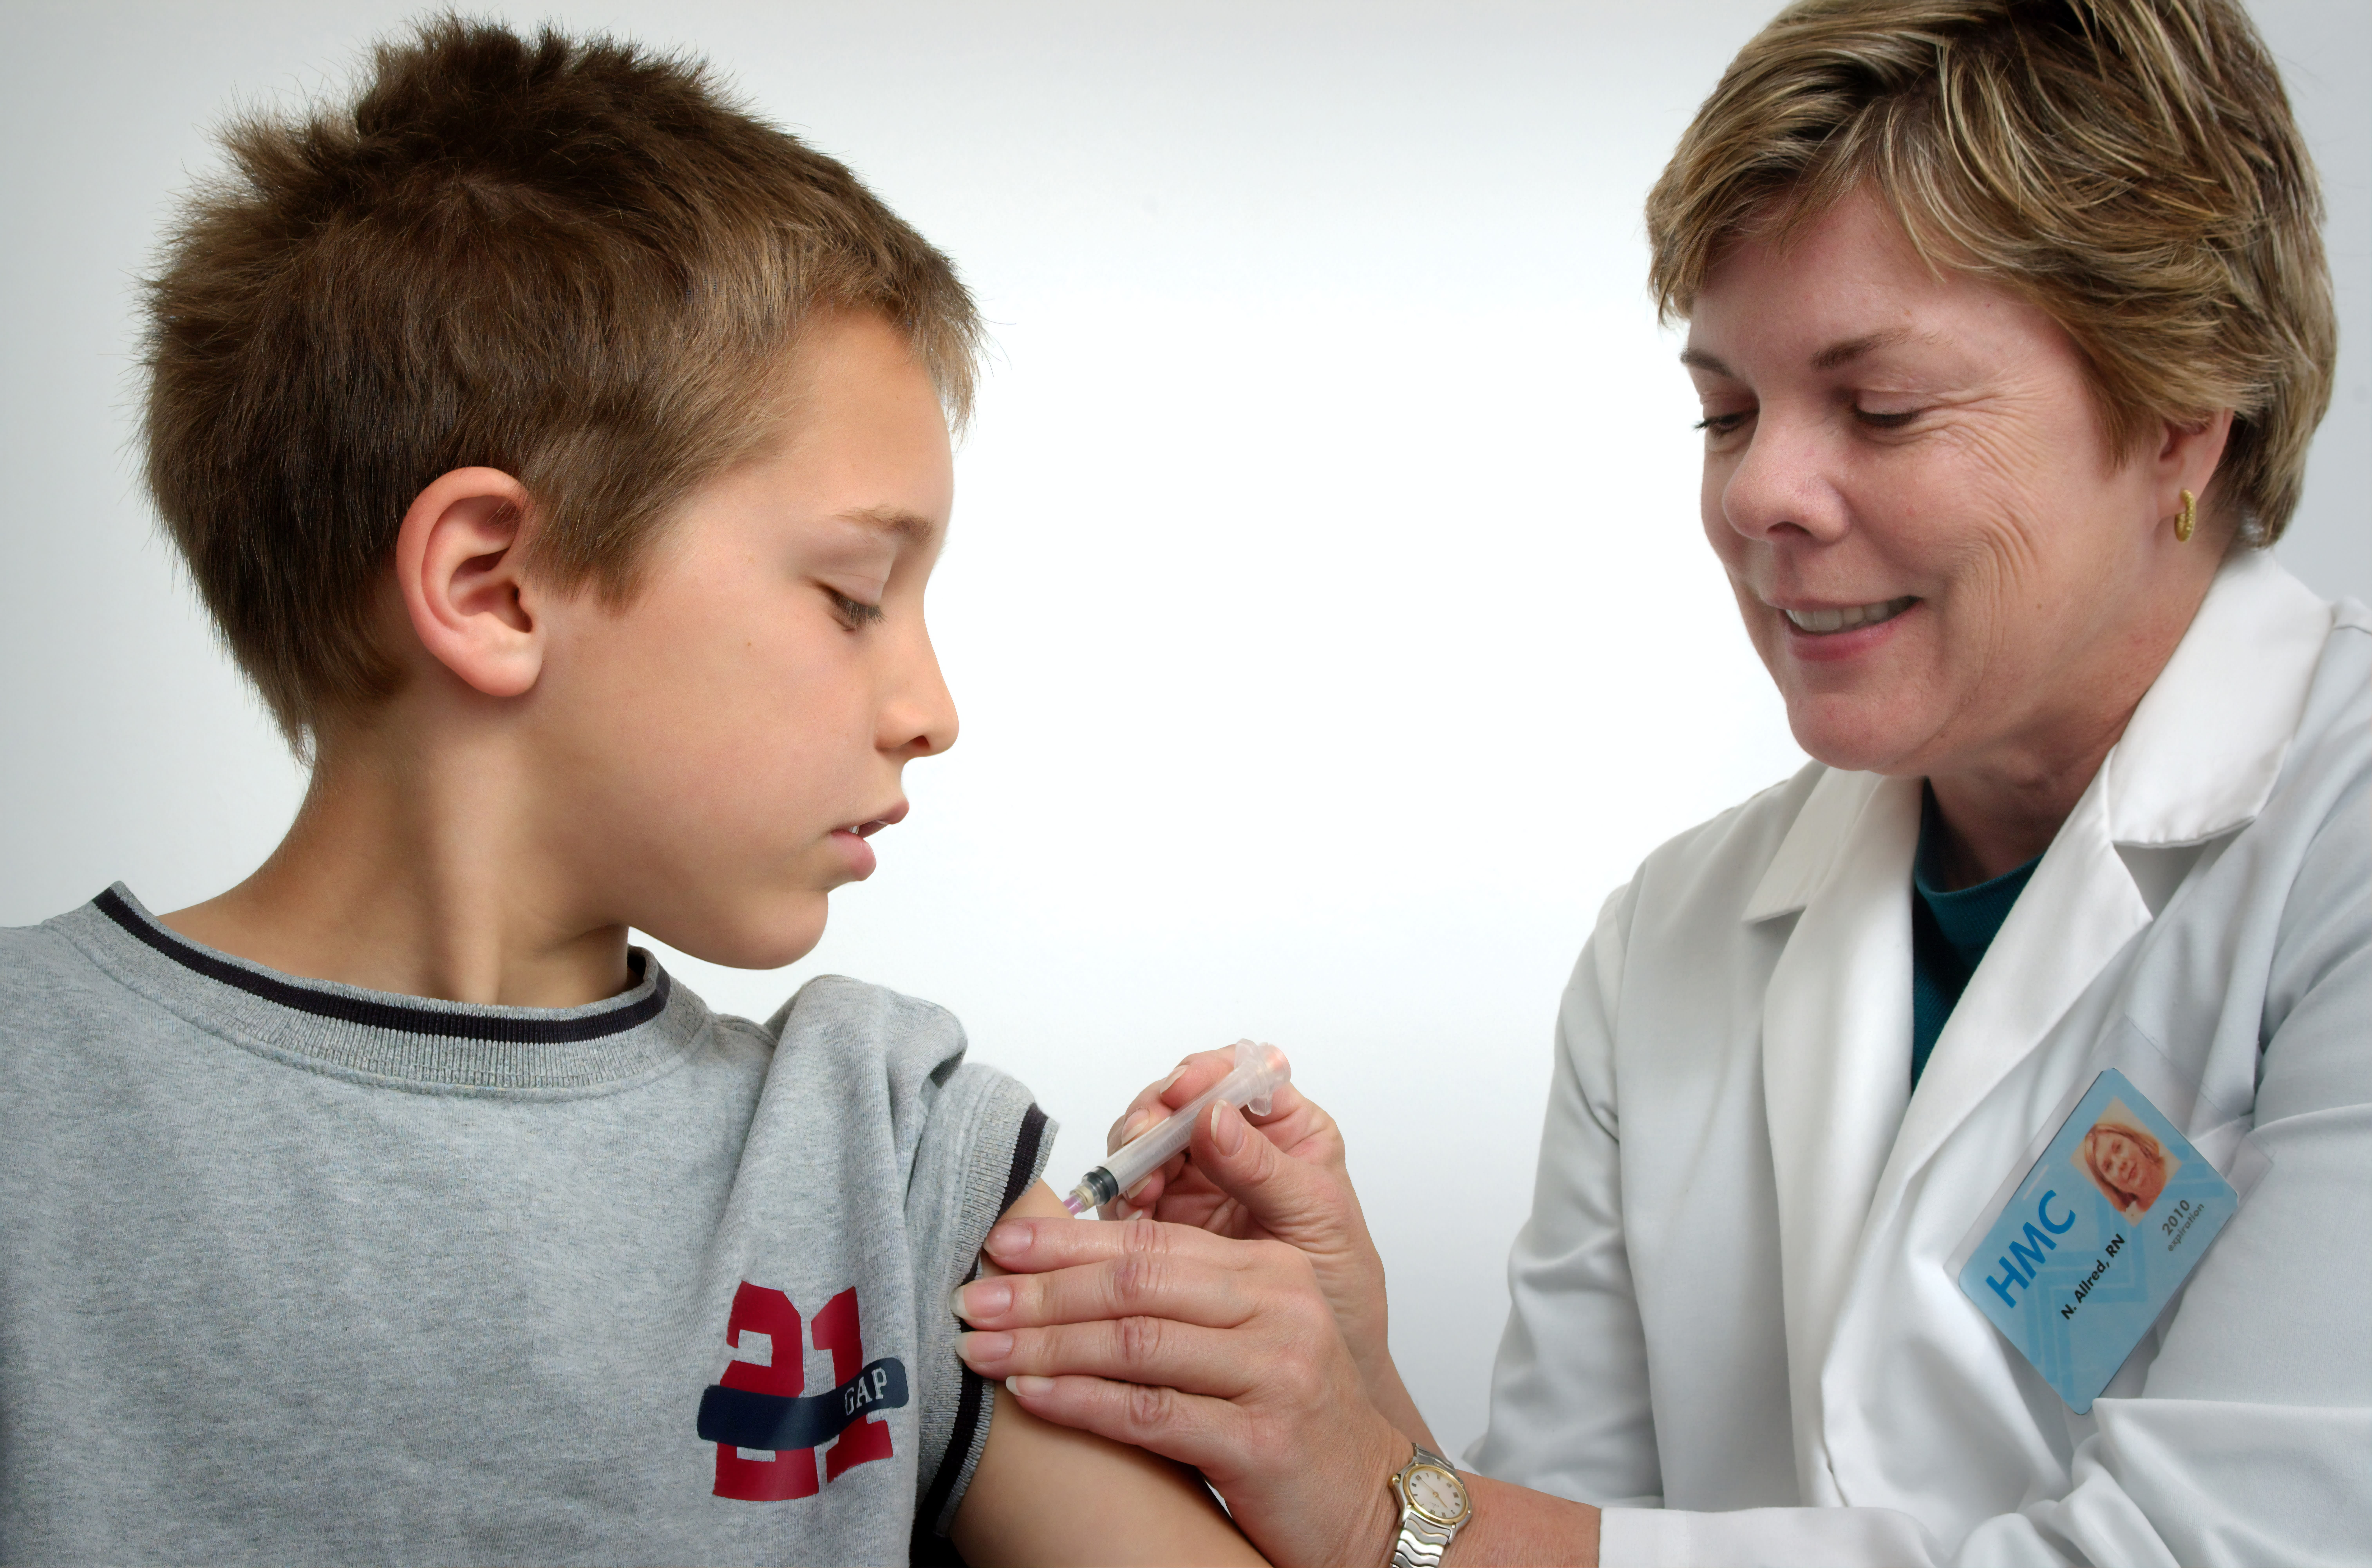 Медицинската сестра, изобразена на тази снимка от 2006 г., е в процес на прилагане на интрамускулна ваксинация в лявото рамо на младо момче.Сестрата прищипваше горната кожа на рамото, за да обездвижи мястото на инжектиране.